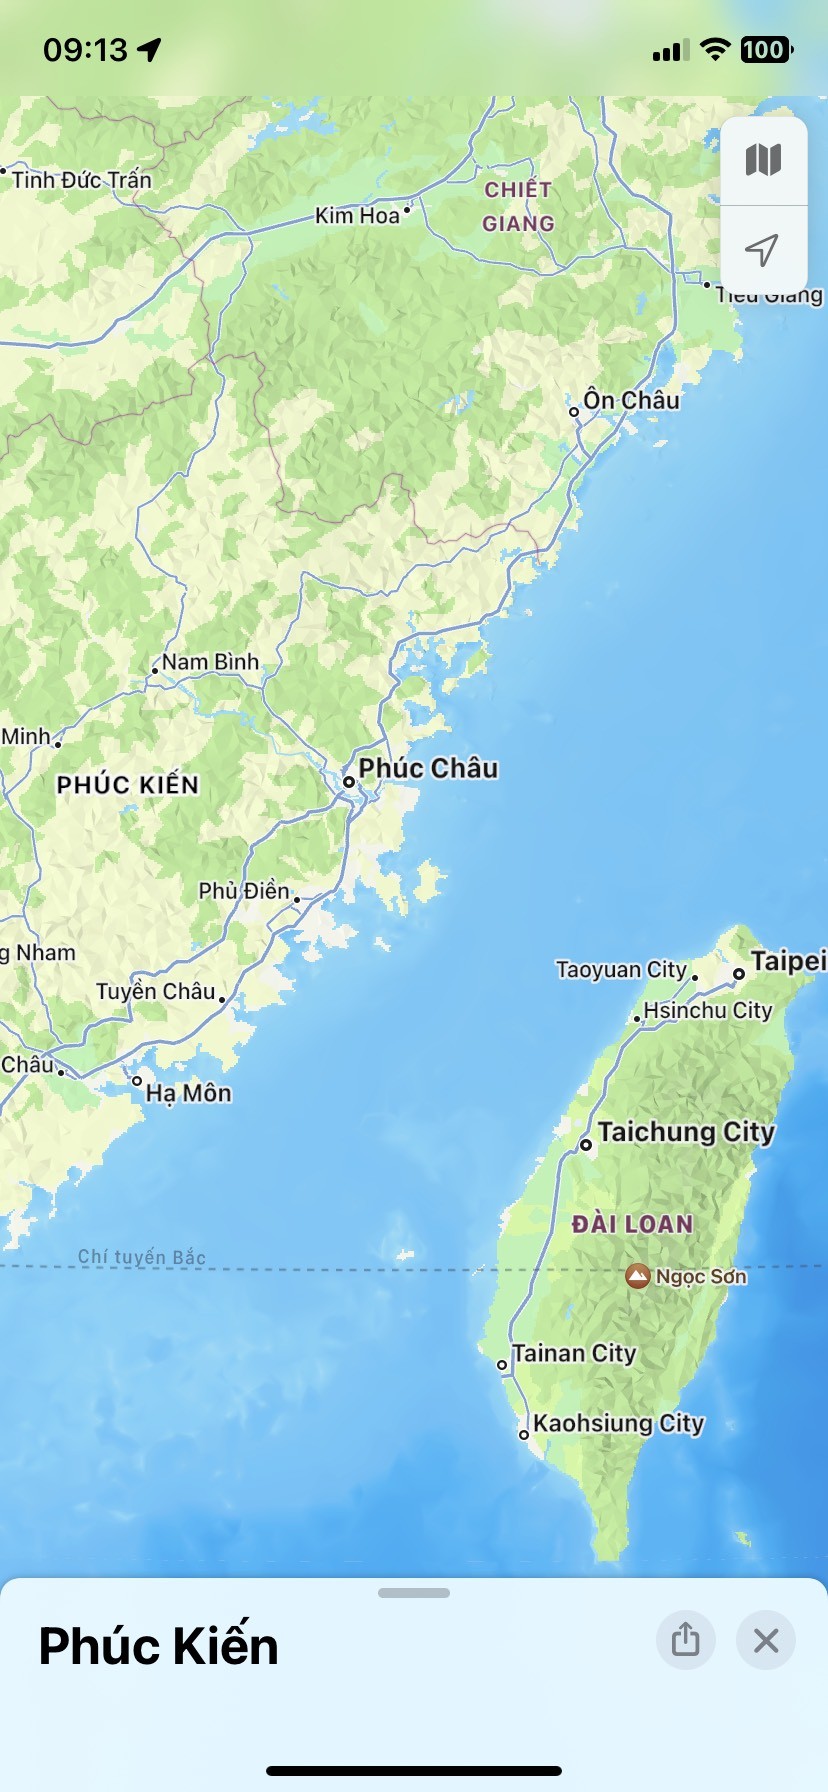 Xôn xao thông tin nhóm người Việt bị chìm tàu khi từ Trung Quốc ...